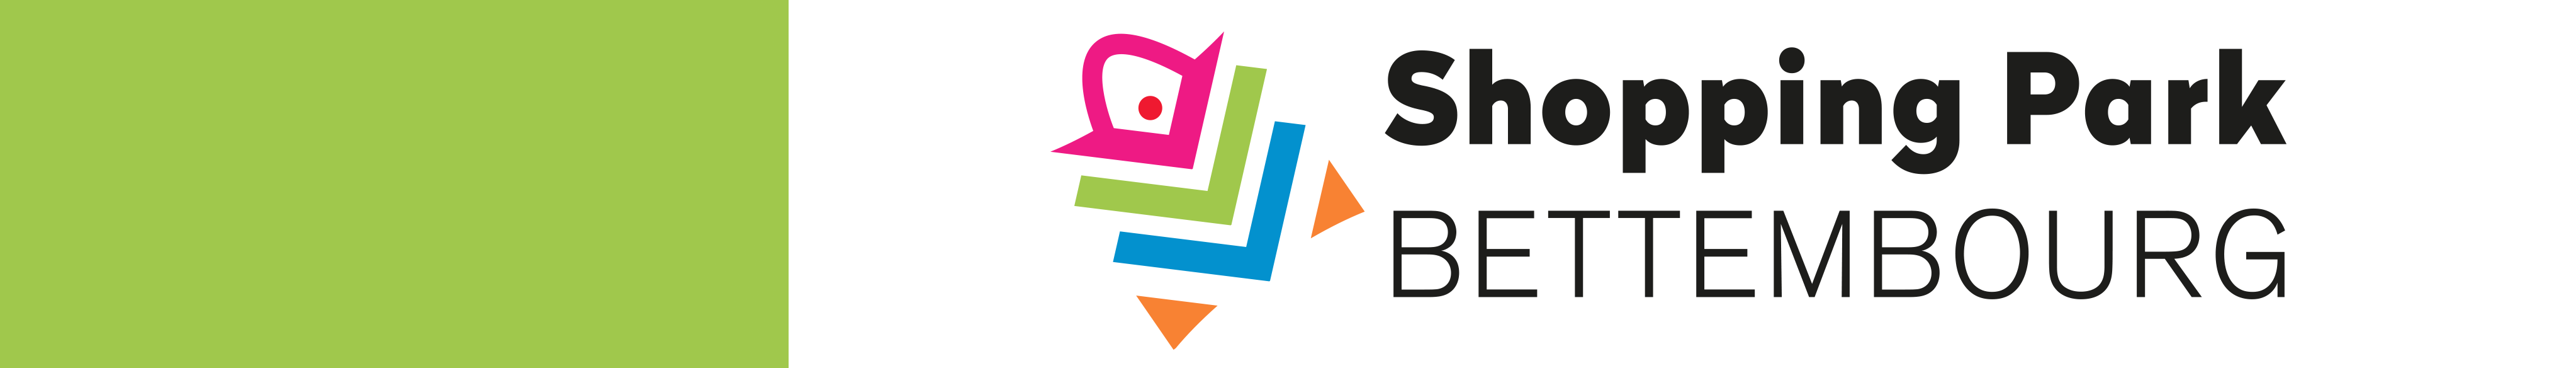 Shopping Park Bettembourg Logo